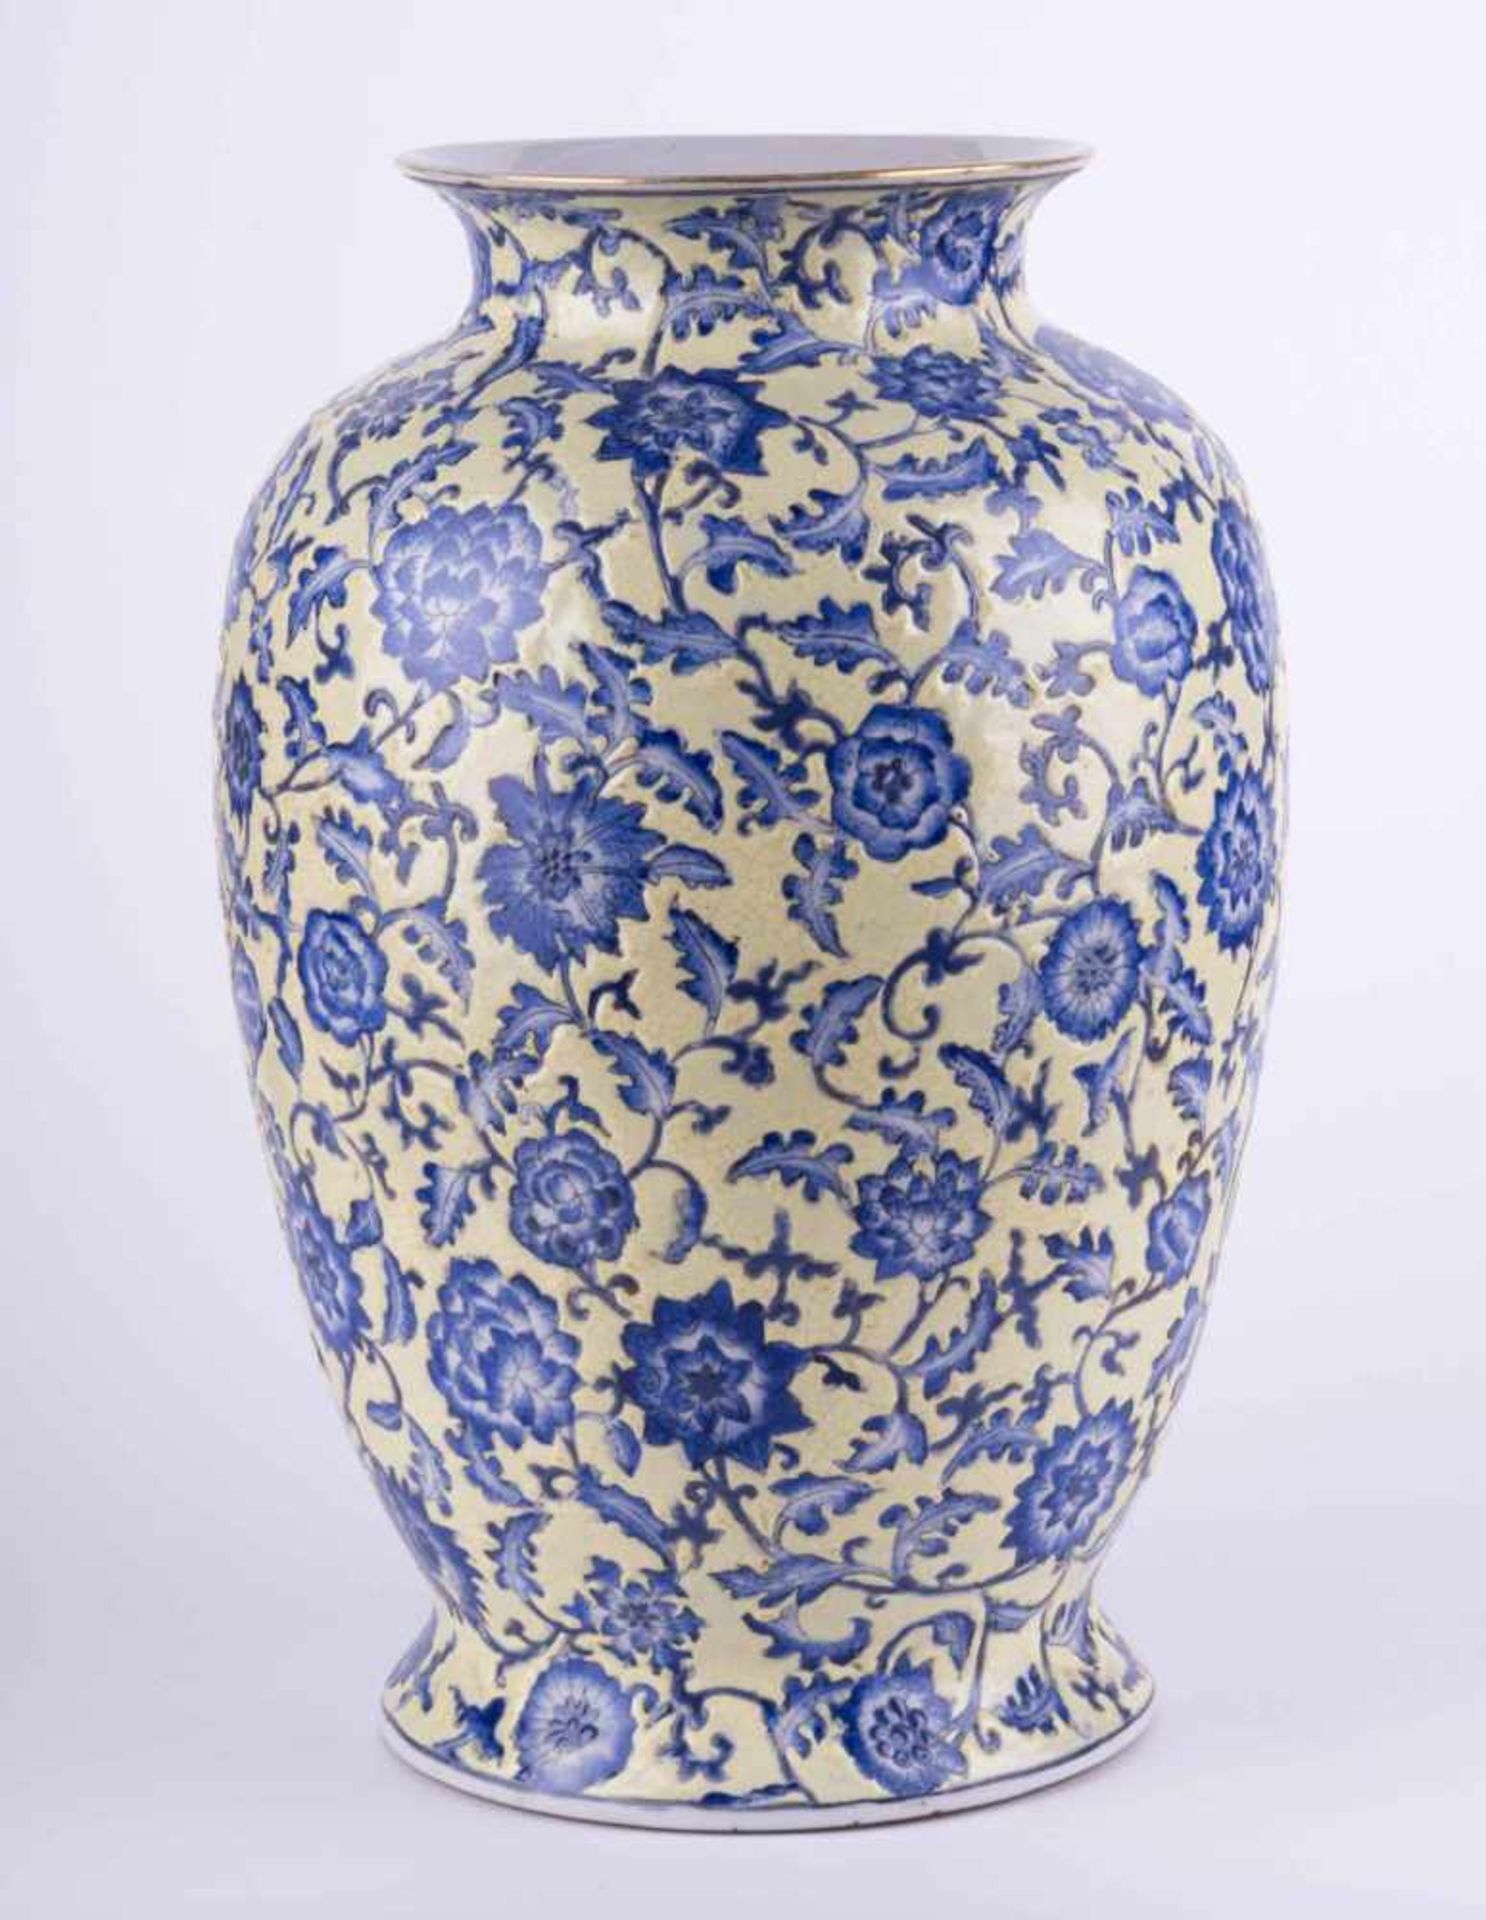 Vase China 19. Jhd. umlaufend reliefierter floraler Dekor, krakeliert, unterm Stand rote